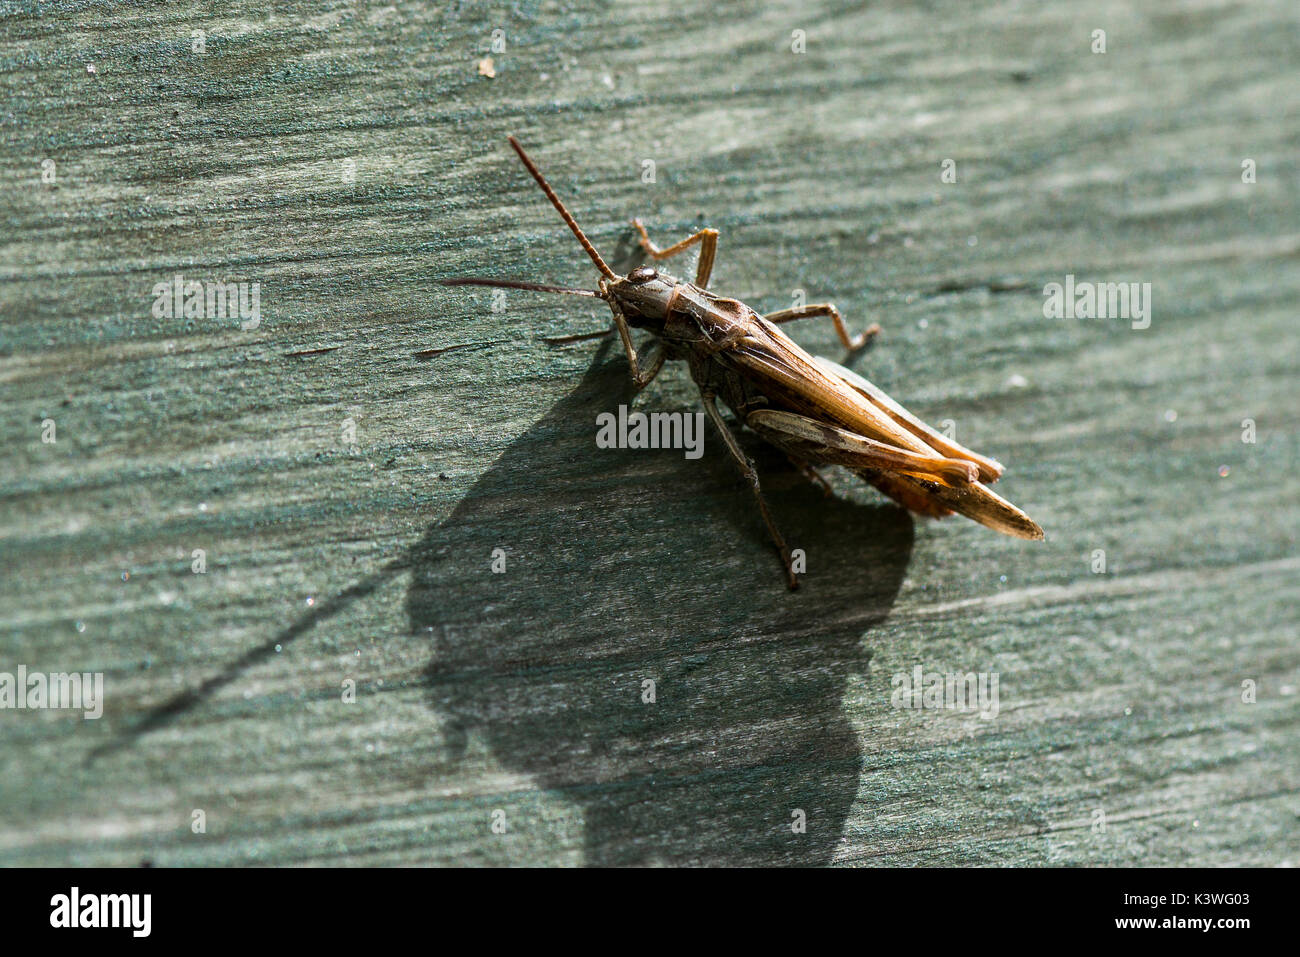 A common field grasshopper (Chorthippus brunneus) Stock Photo